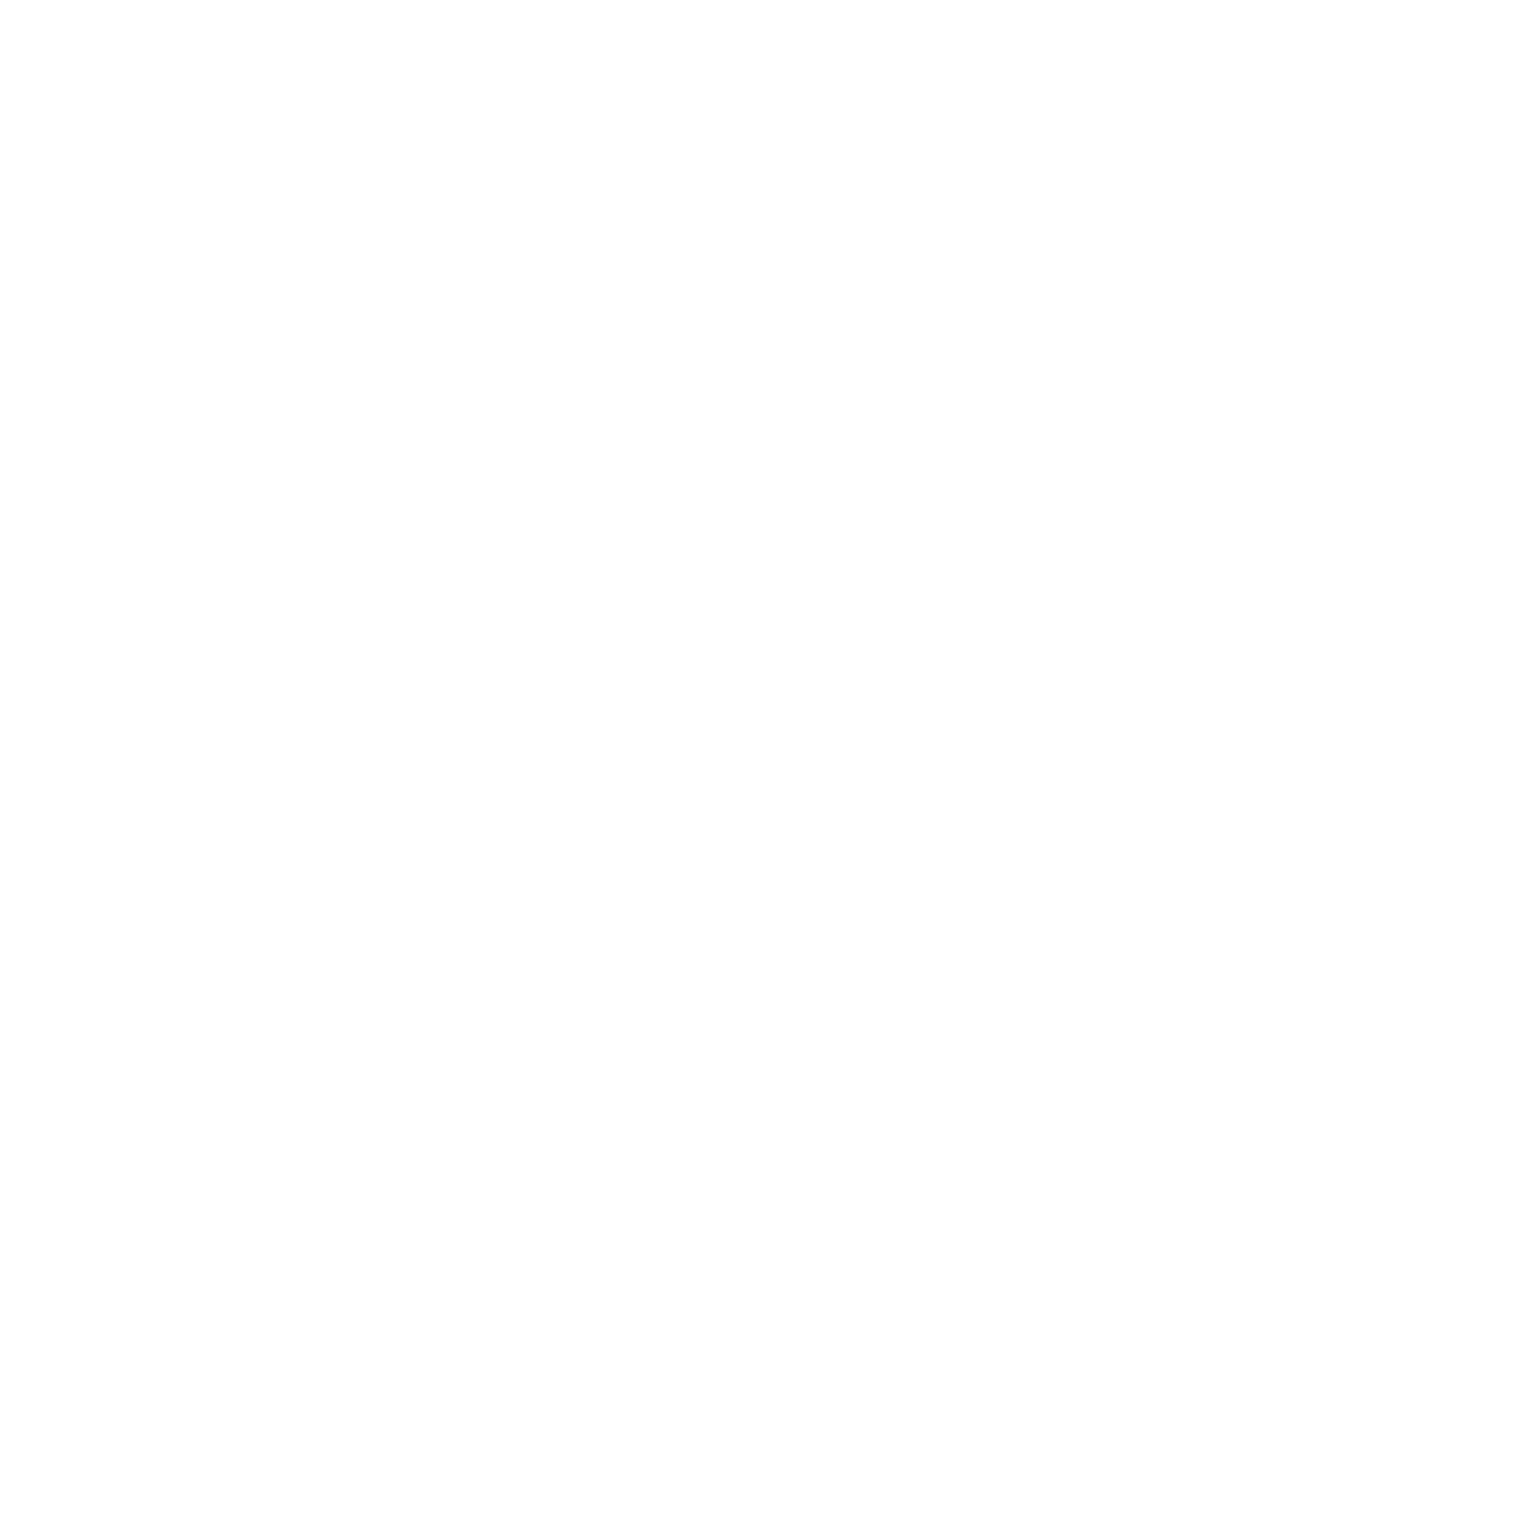 Rubrik logo pour fonds sombres (PNG transparent)